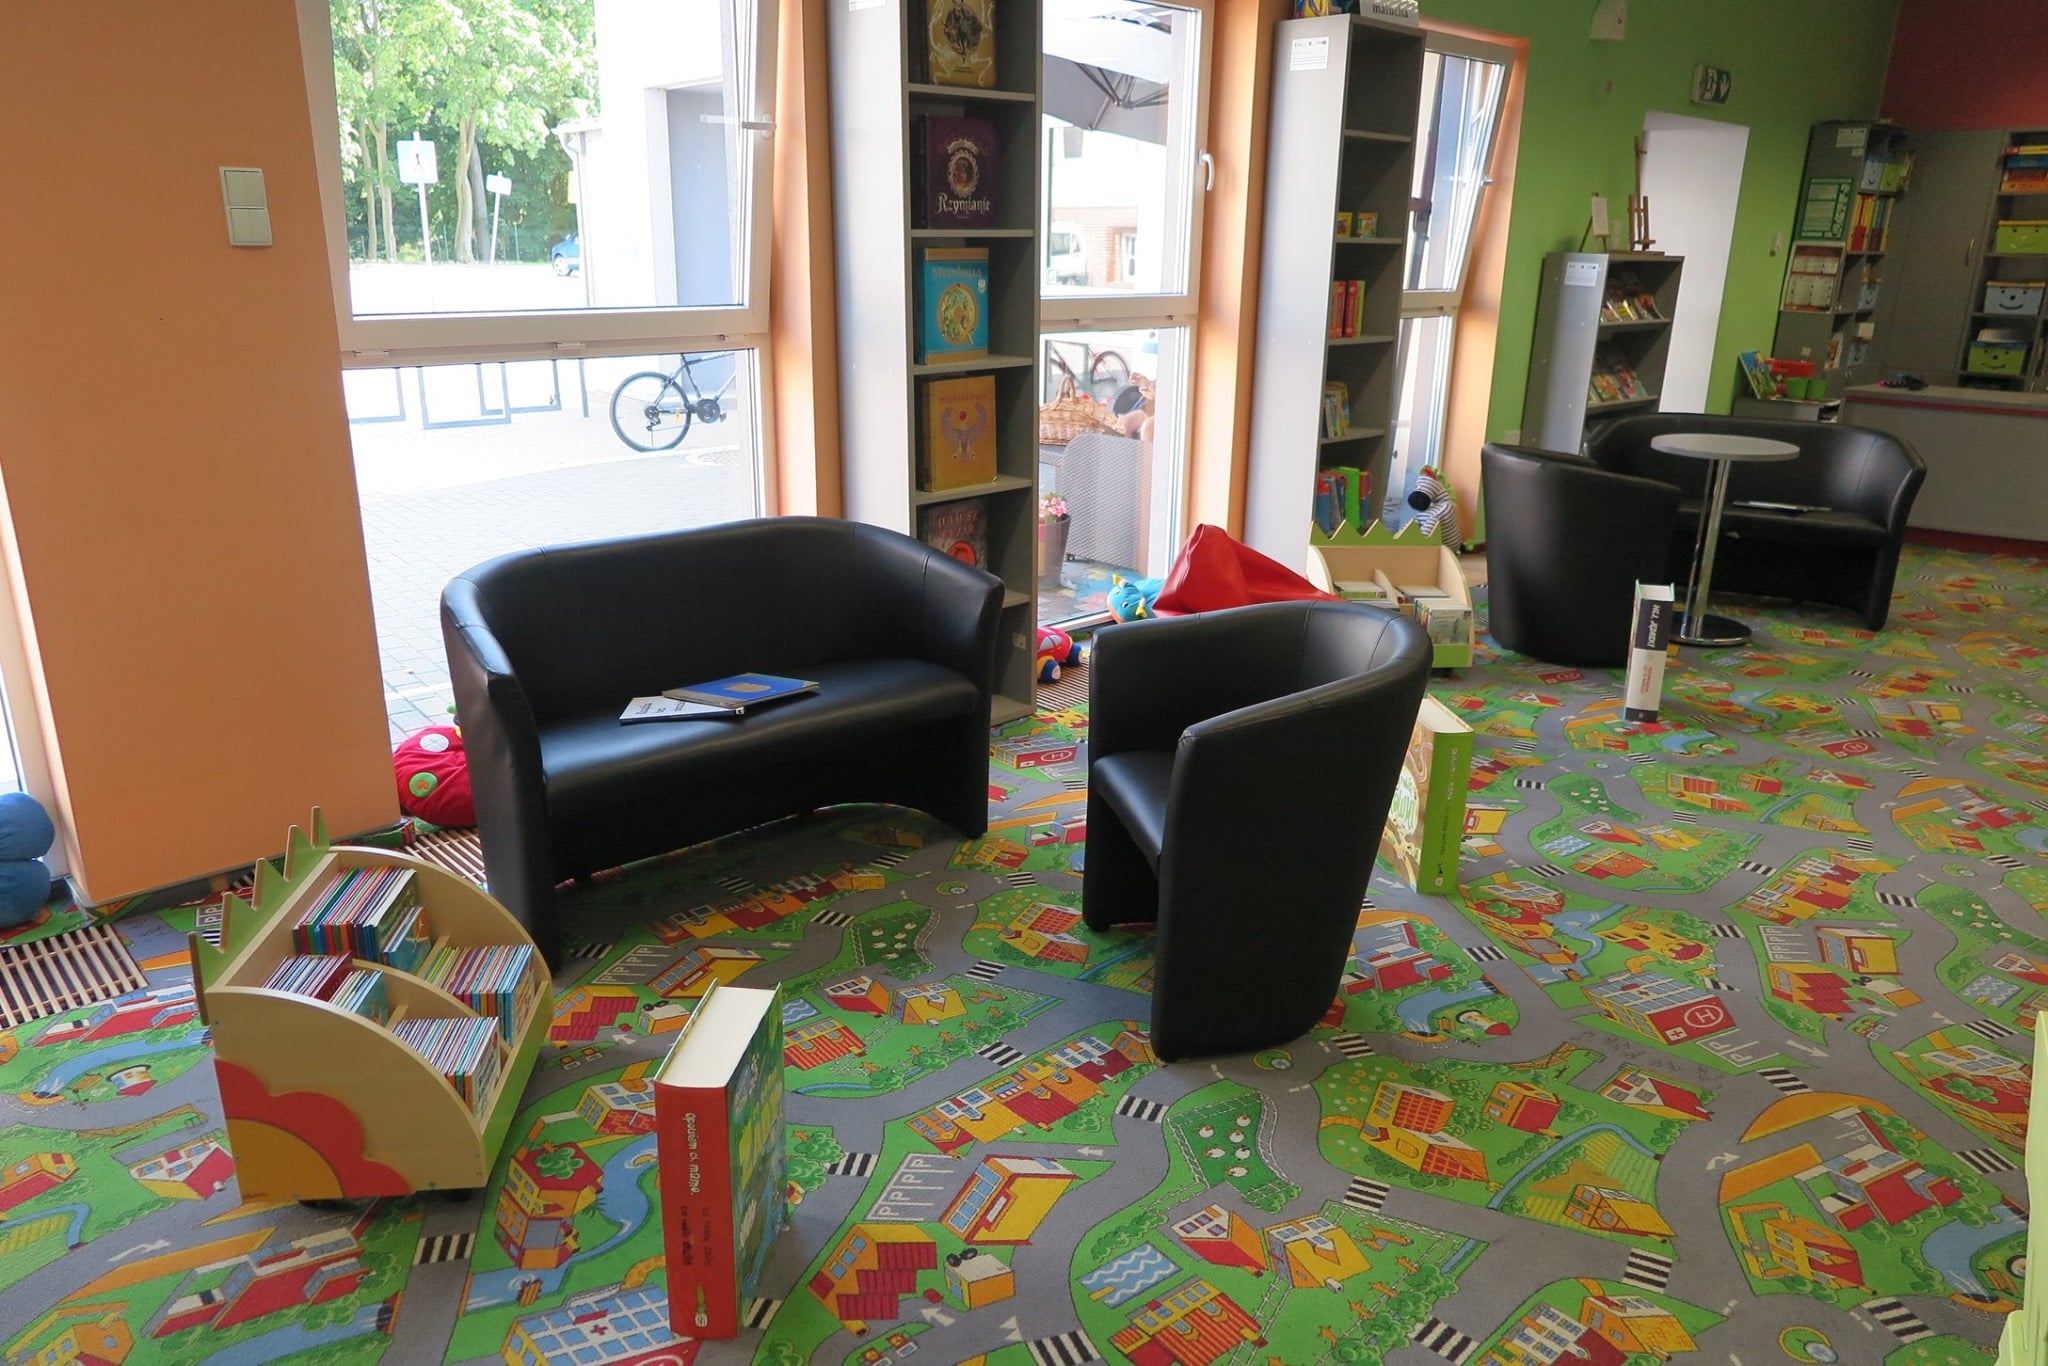 Wnętrze biblioteki, oddział dla dzieci. W tle kanapy i fotele oraz regały z książkami.